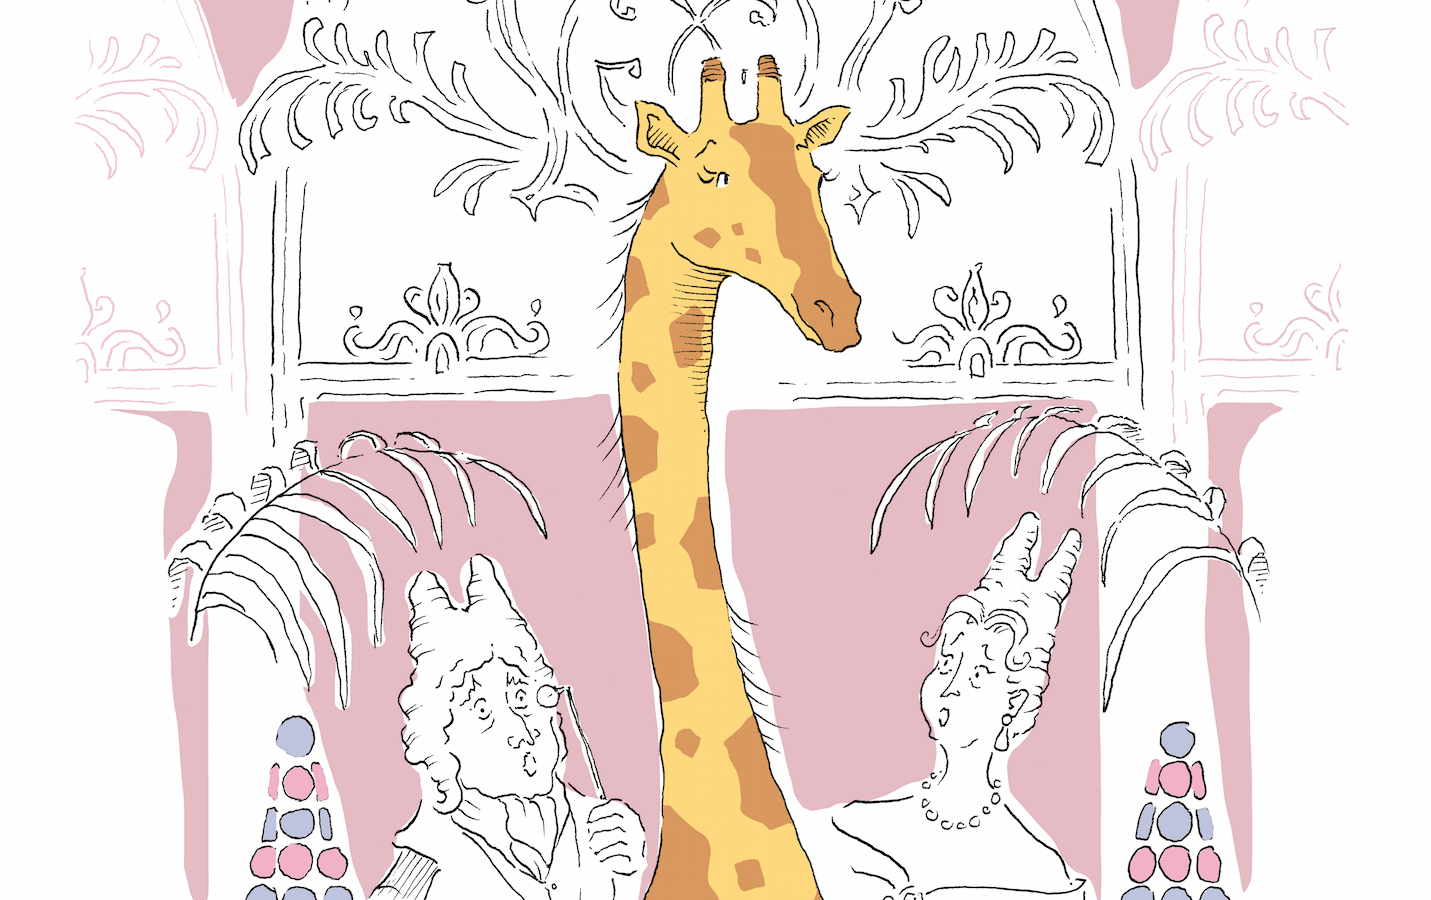 Egypt's 19th century gift to France inspires new children's book 'Grace the Giraffe' – Arab News